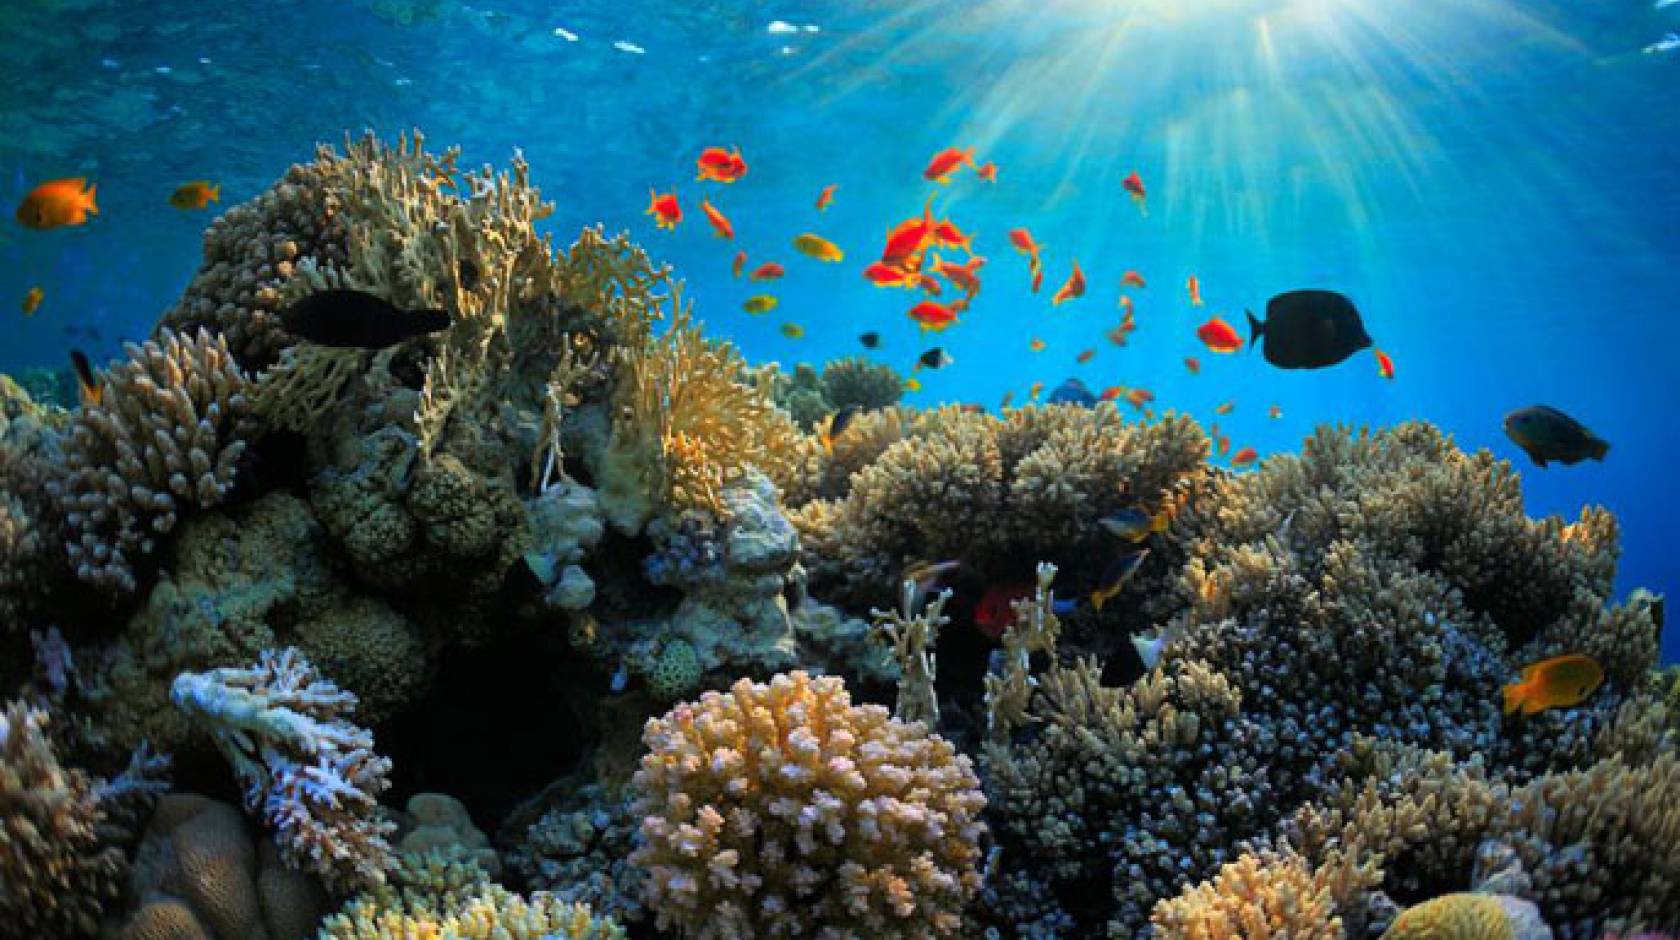 Fish social lives may be key to saving coral reefs | University of ...